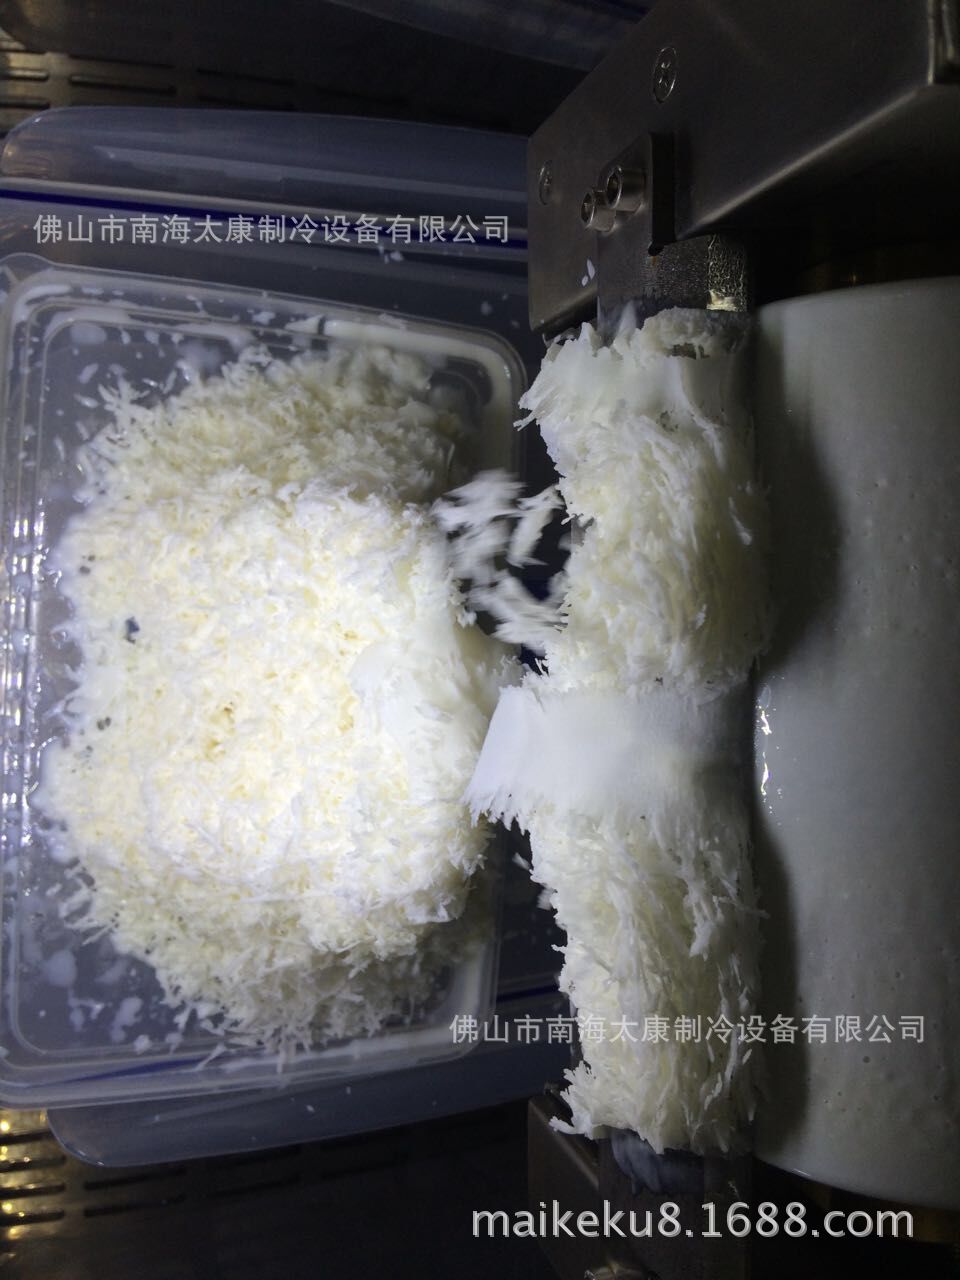 牛奶雪花机 插桶式雪花冰机食品果汁韩国商用雪花机 雪花制冰机